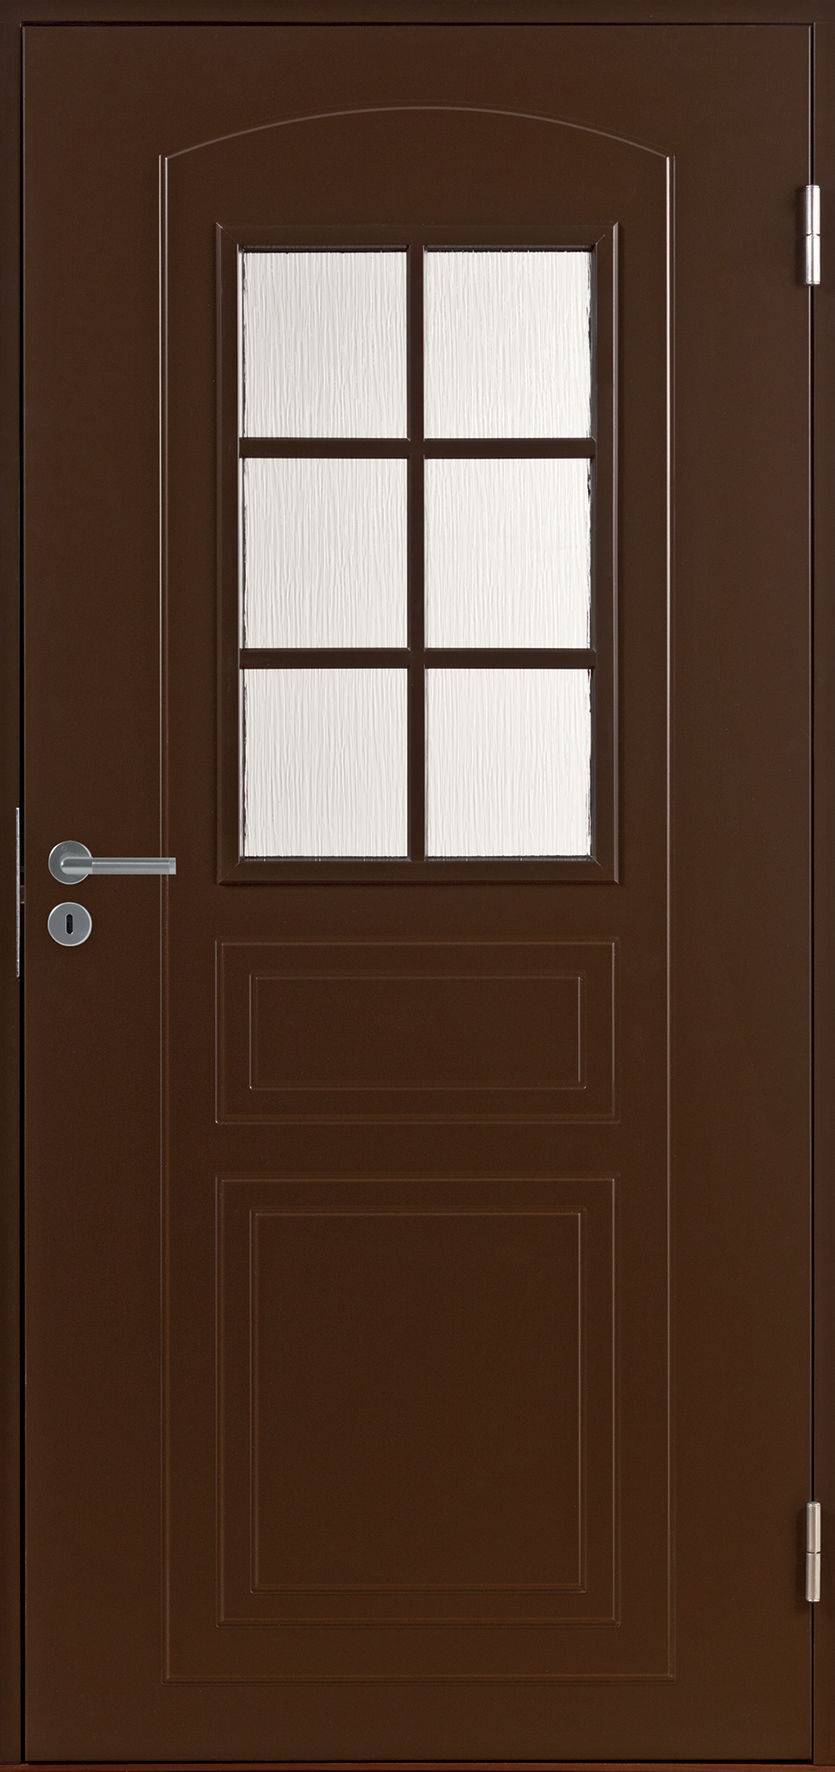 Дверь коричневая со стеклом. Финская входная дверь Jeld-Wen. Финские двери Jeld Wen. Финская входная дверь Jeld-Wen Basic 010. Финская входная дверь Swedoor Jeld-Wen Basic 015 коричневый.